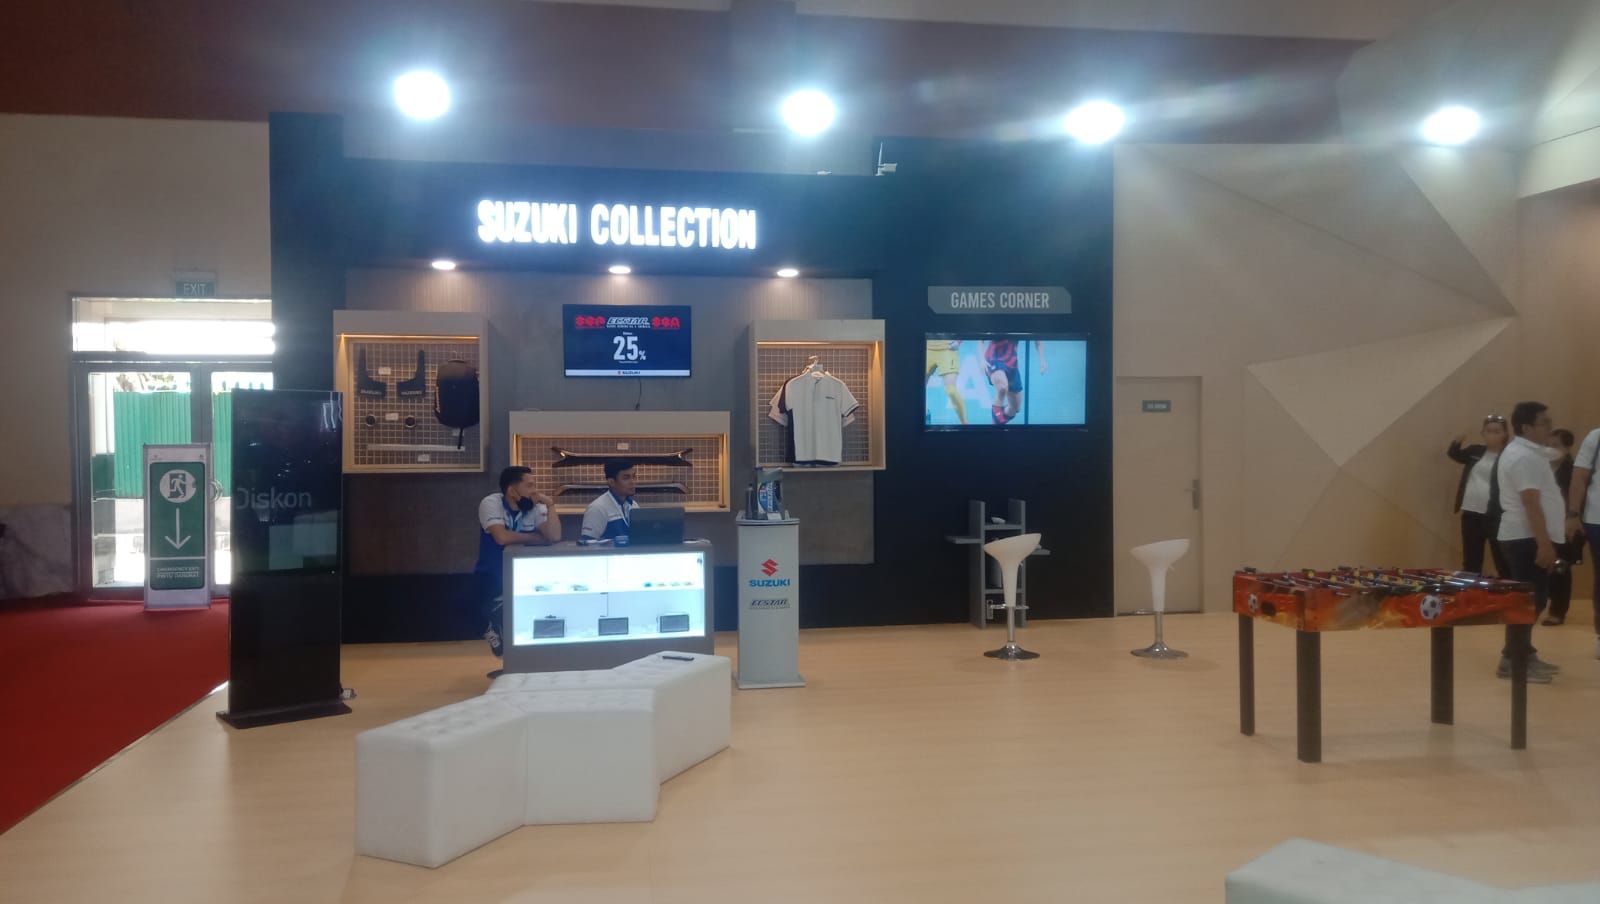 Suzuki Collection dan Games Corner